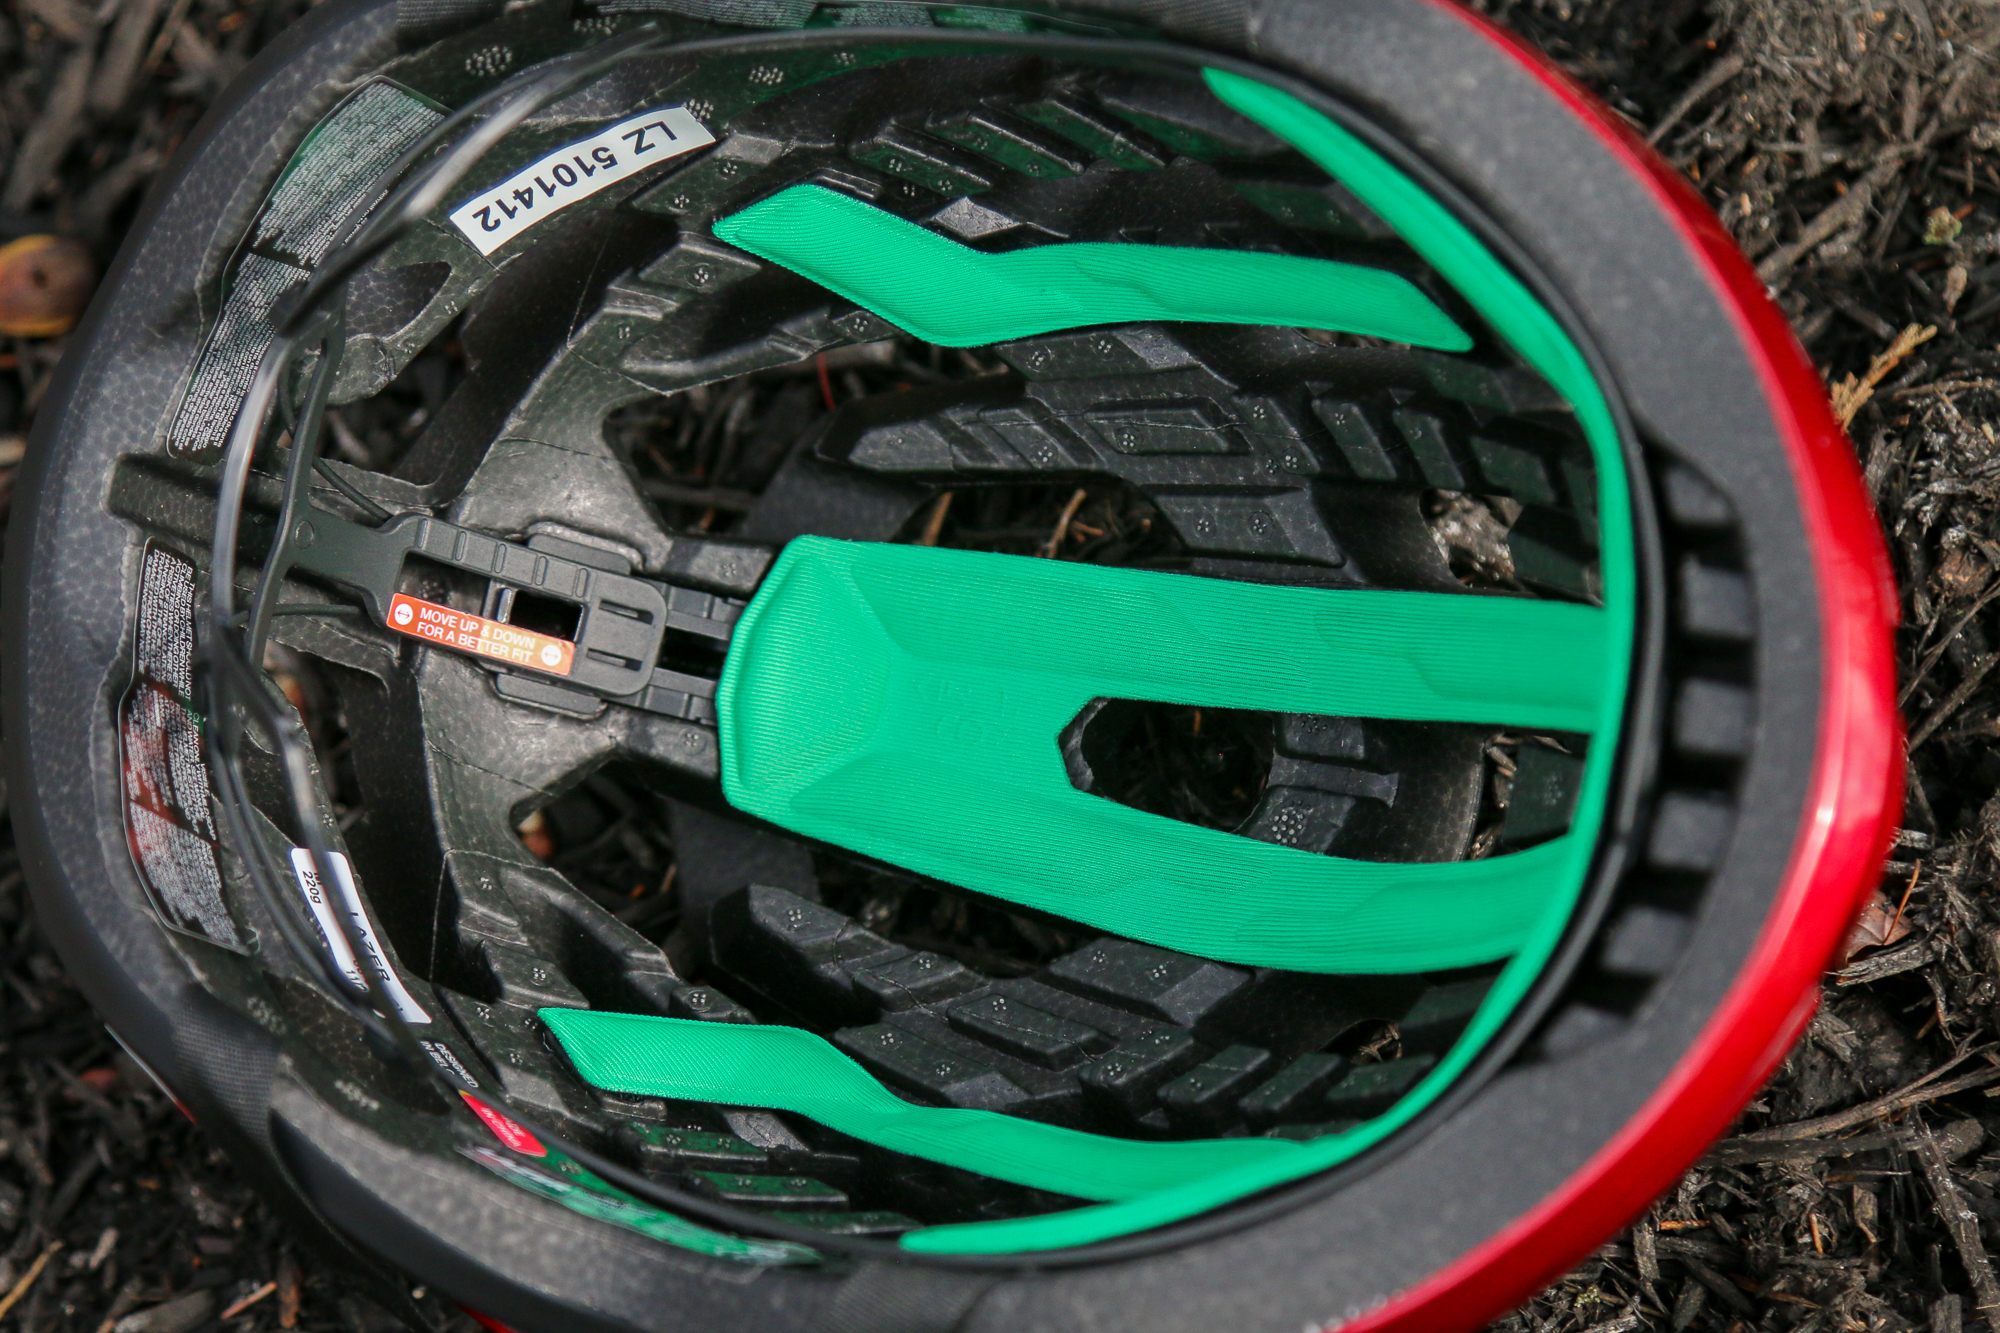 Lazer Z1 Kineticore helmet detail